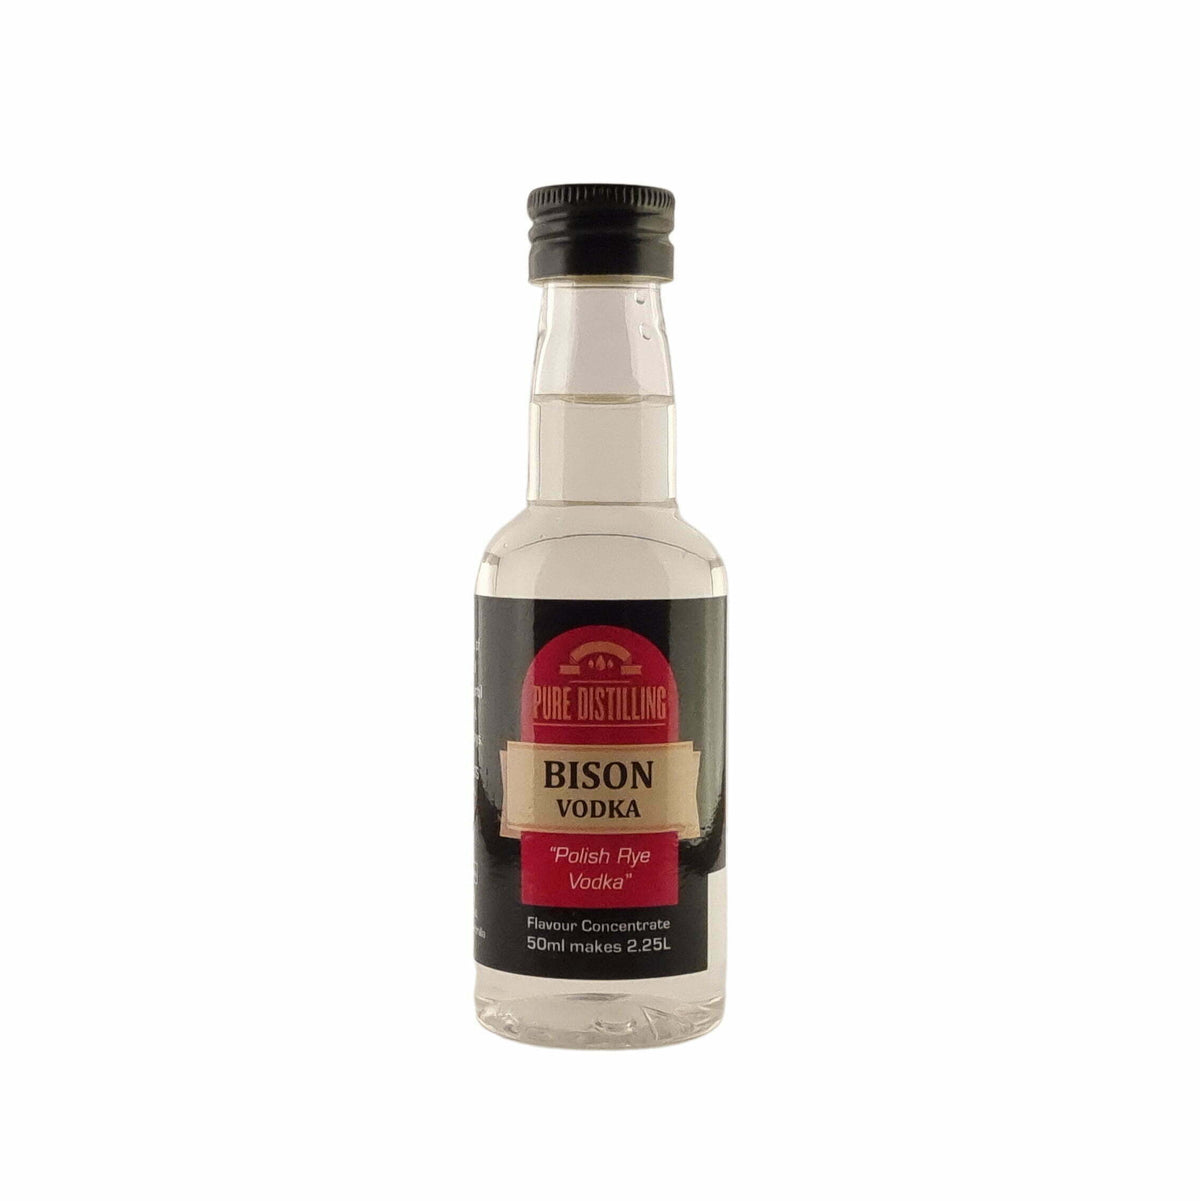 Pure Distilling Bison Vodka Flavour